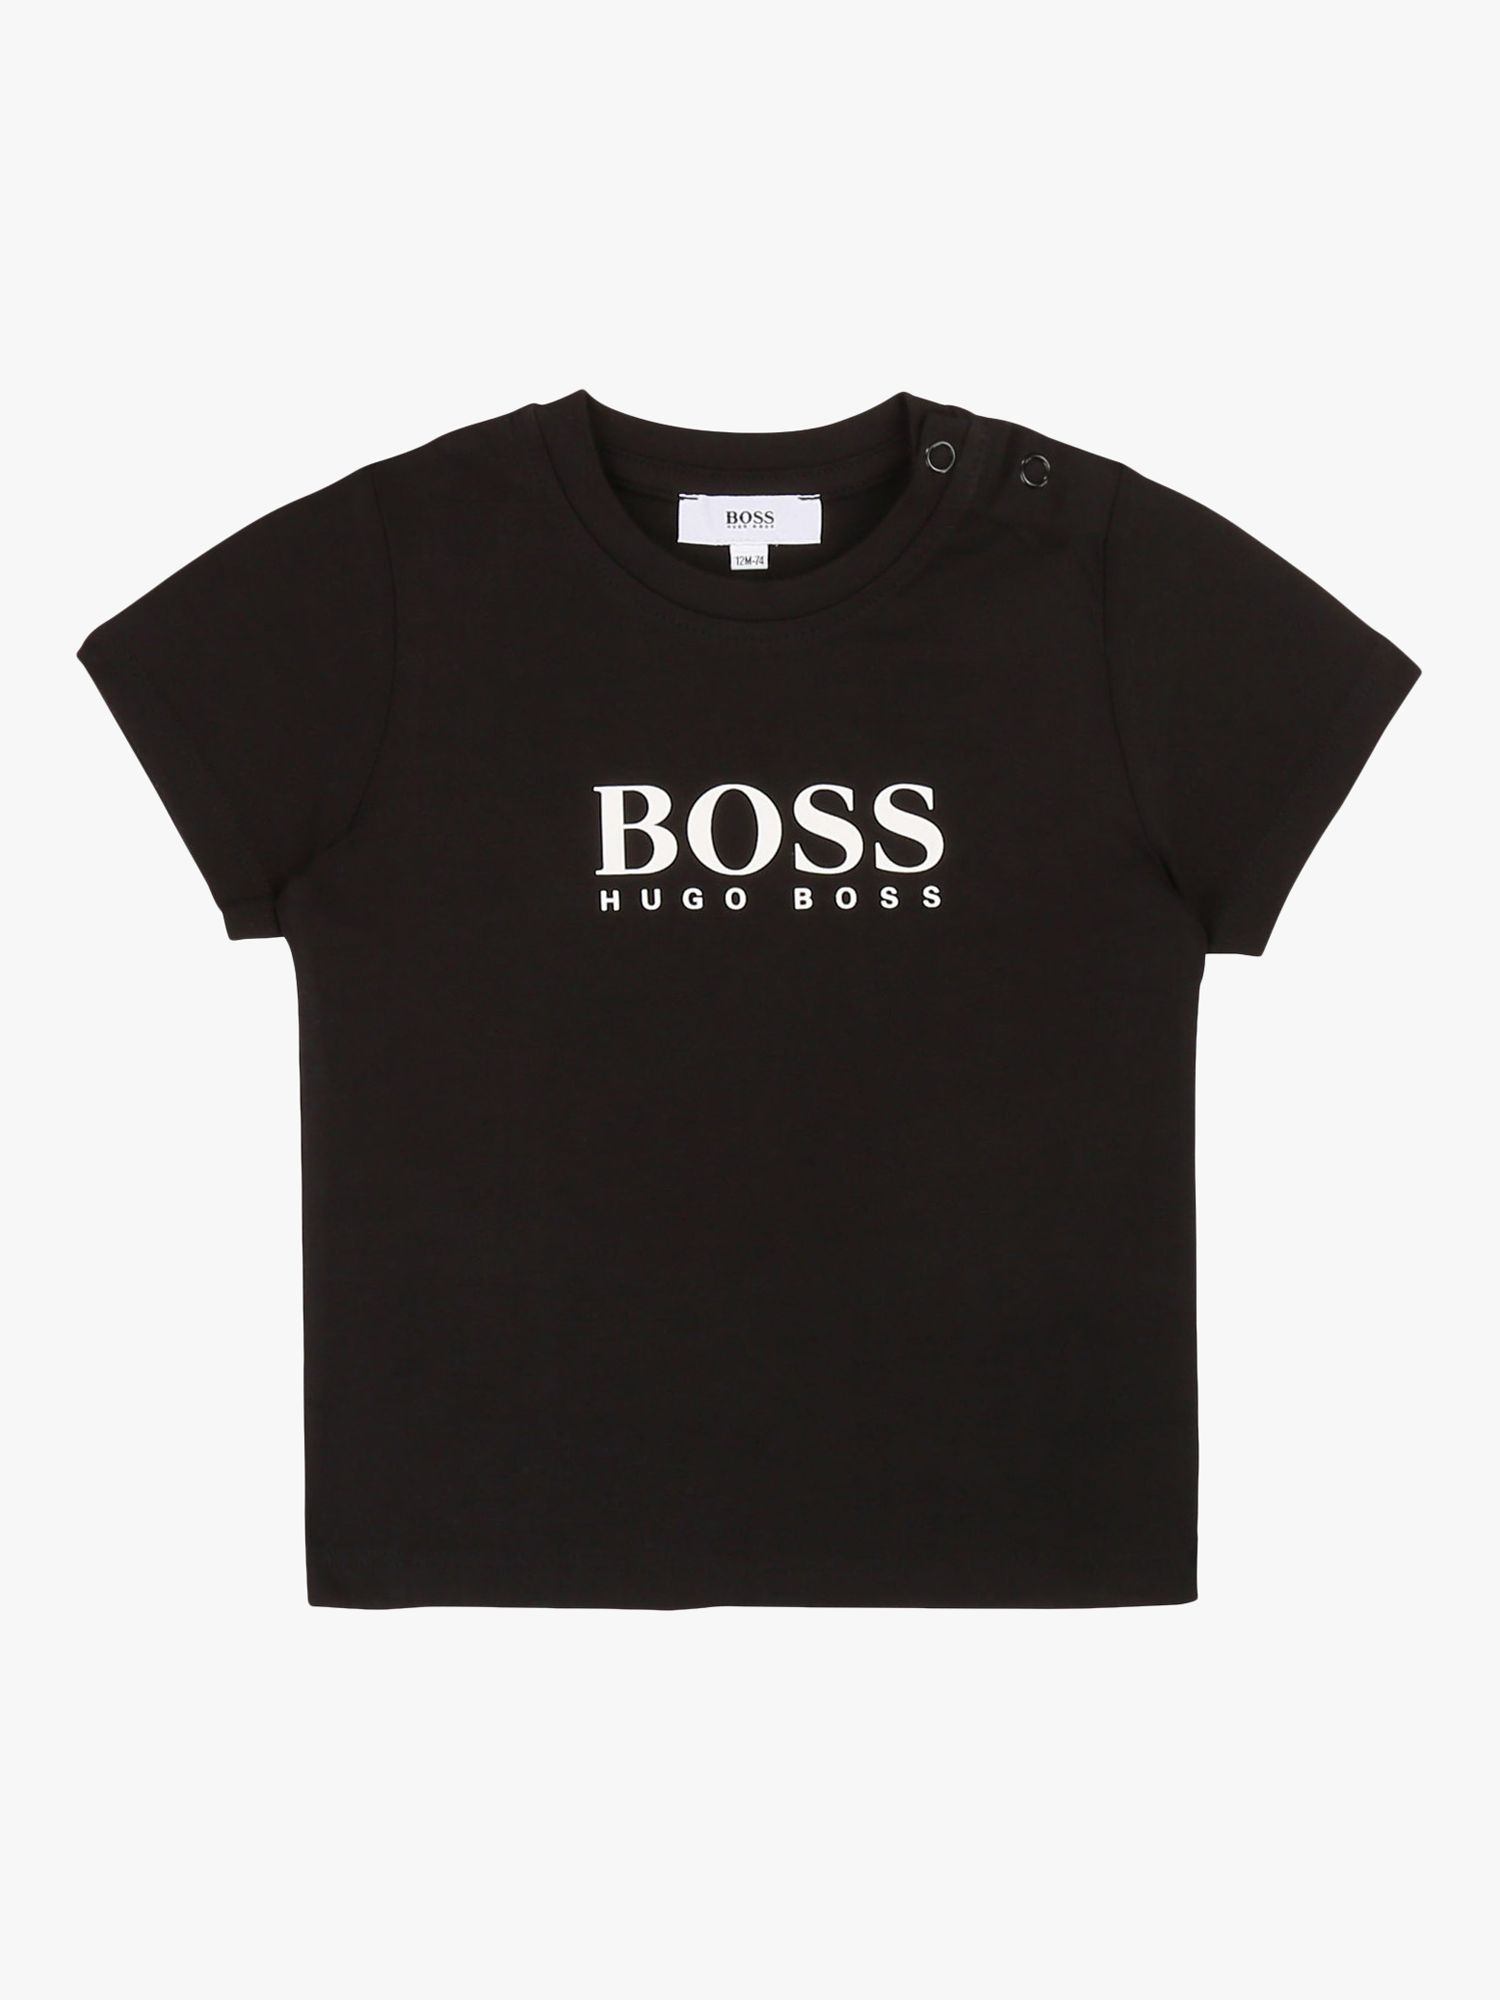 HUGO BOSS Baby Logo Short Sleeved Tee, Black